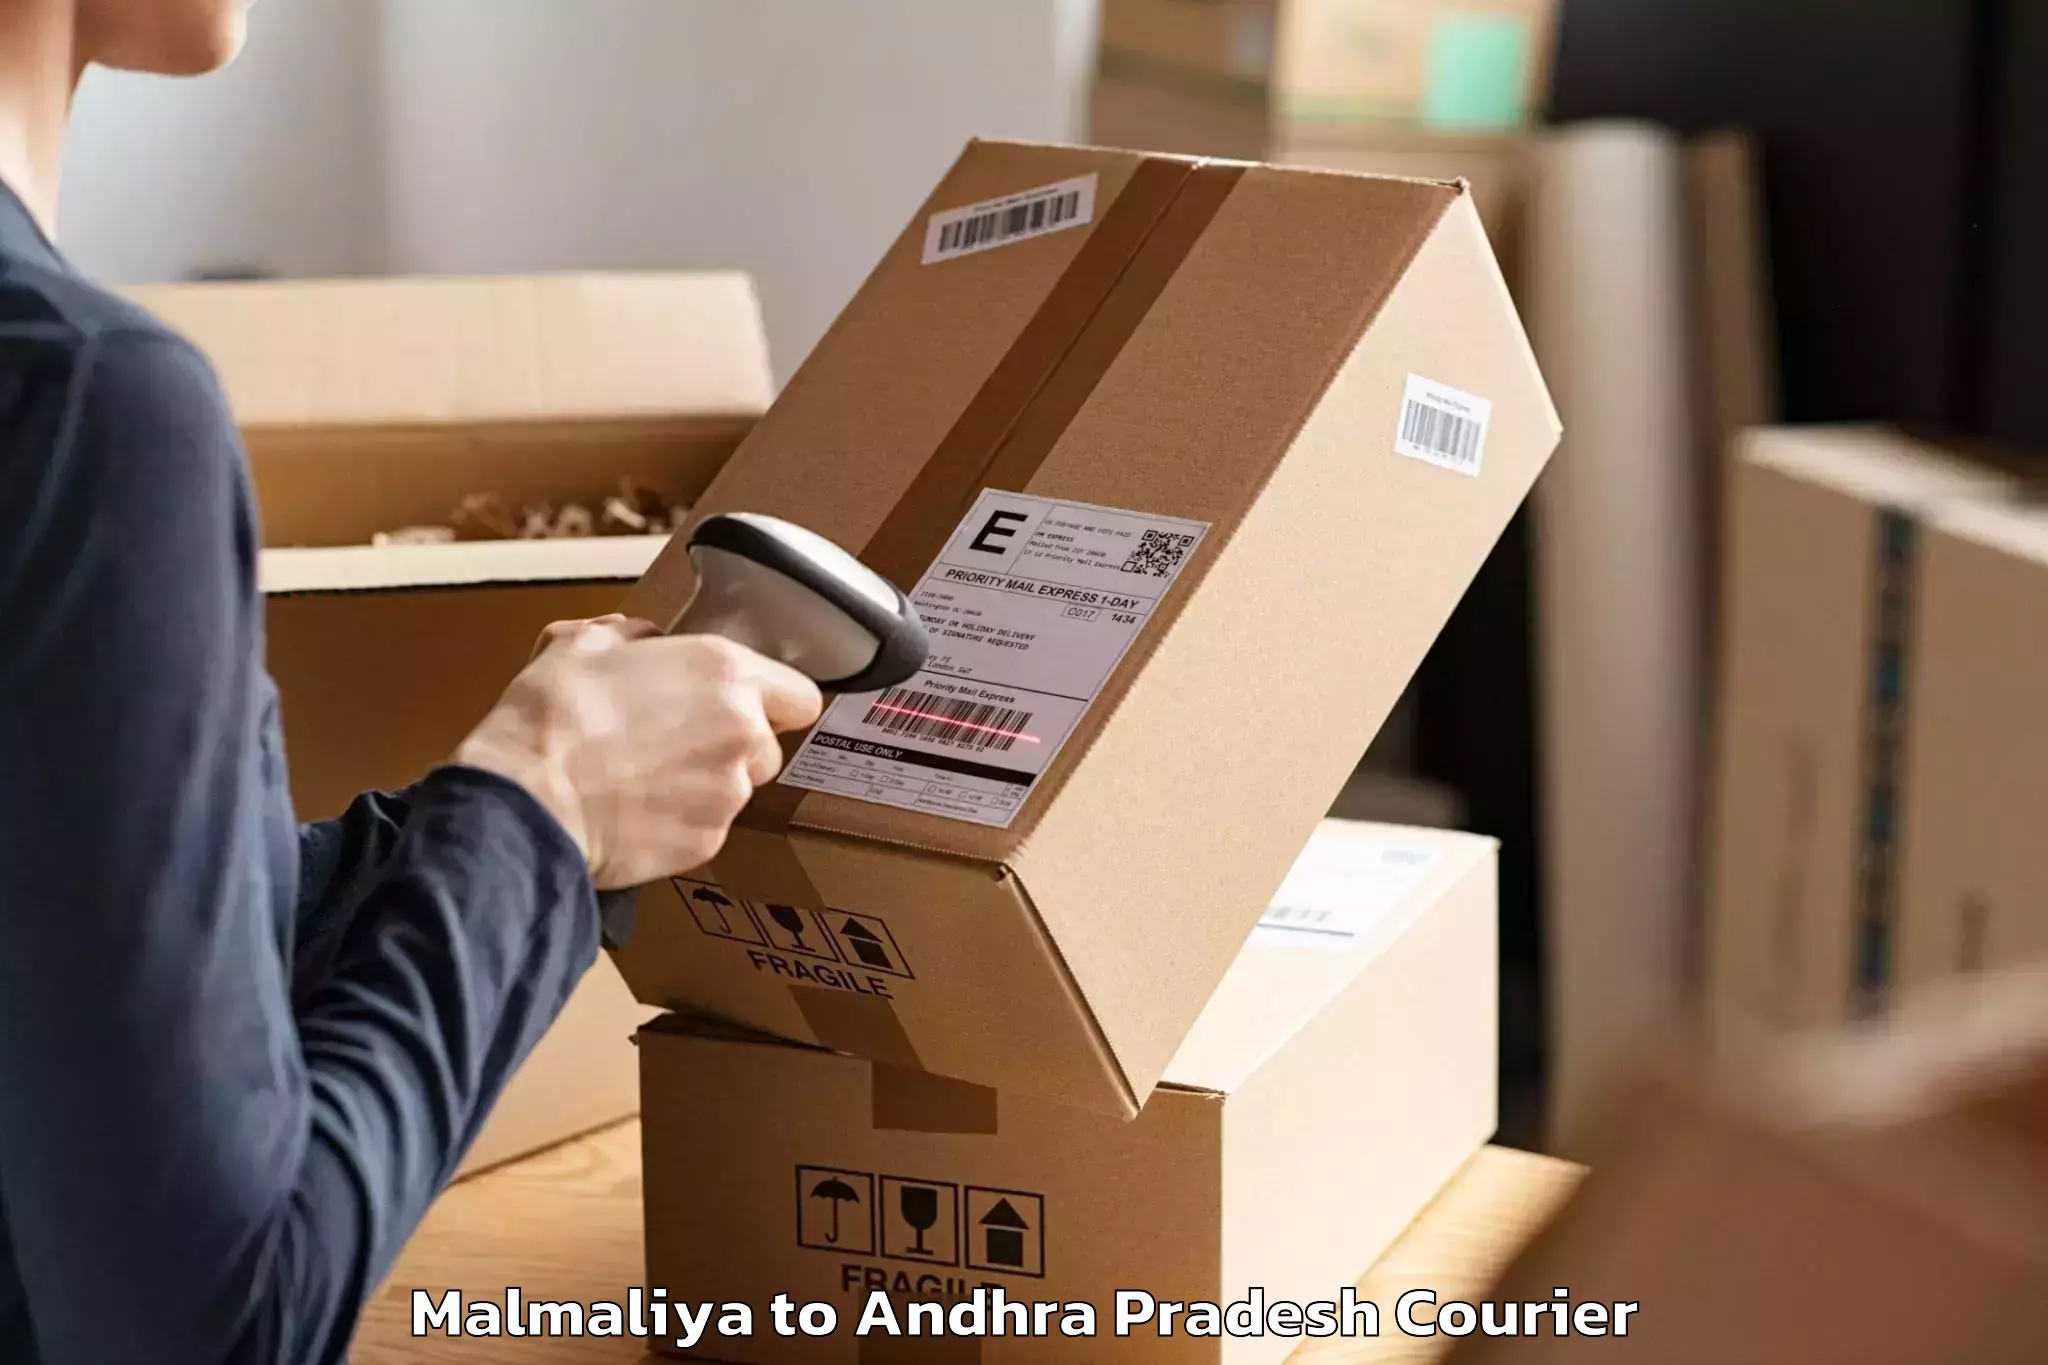 Efficient moving company Malmaliya to NIT Andhra Pradesh